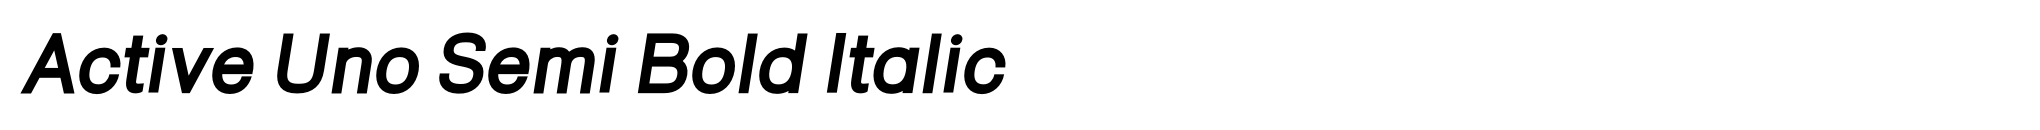 Active Uno Semi Bold Italic image